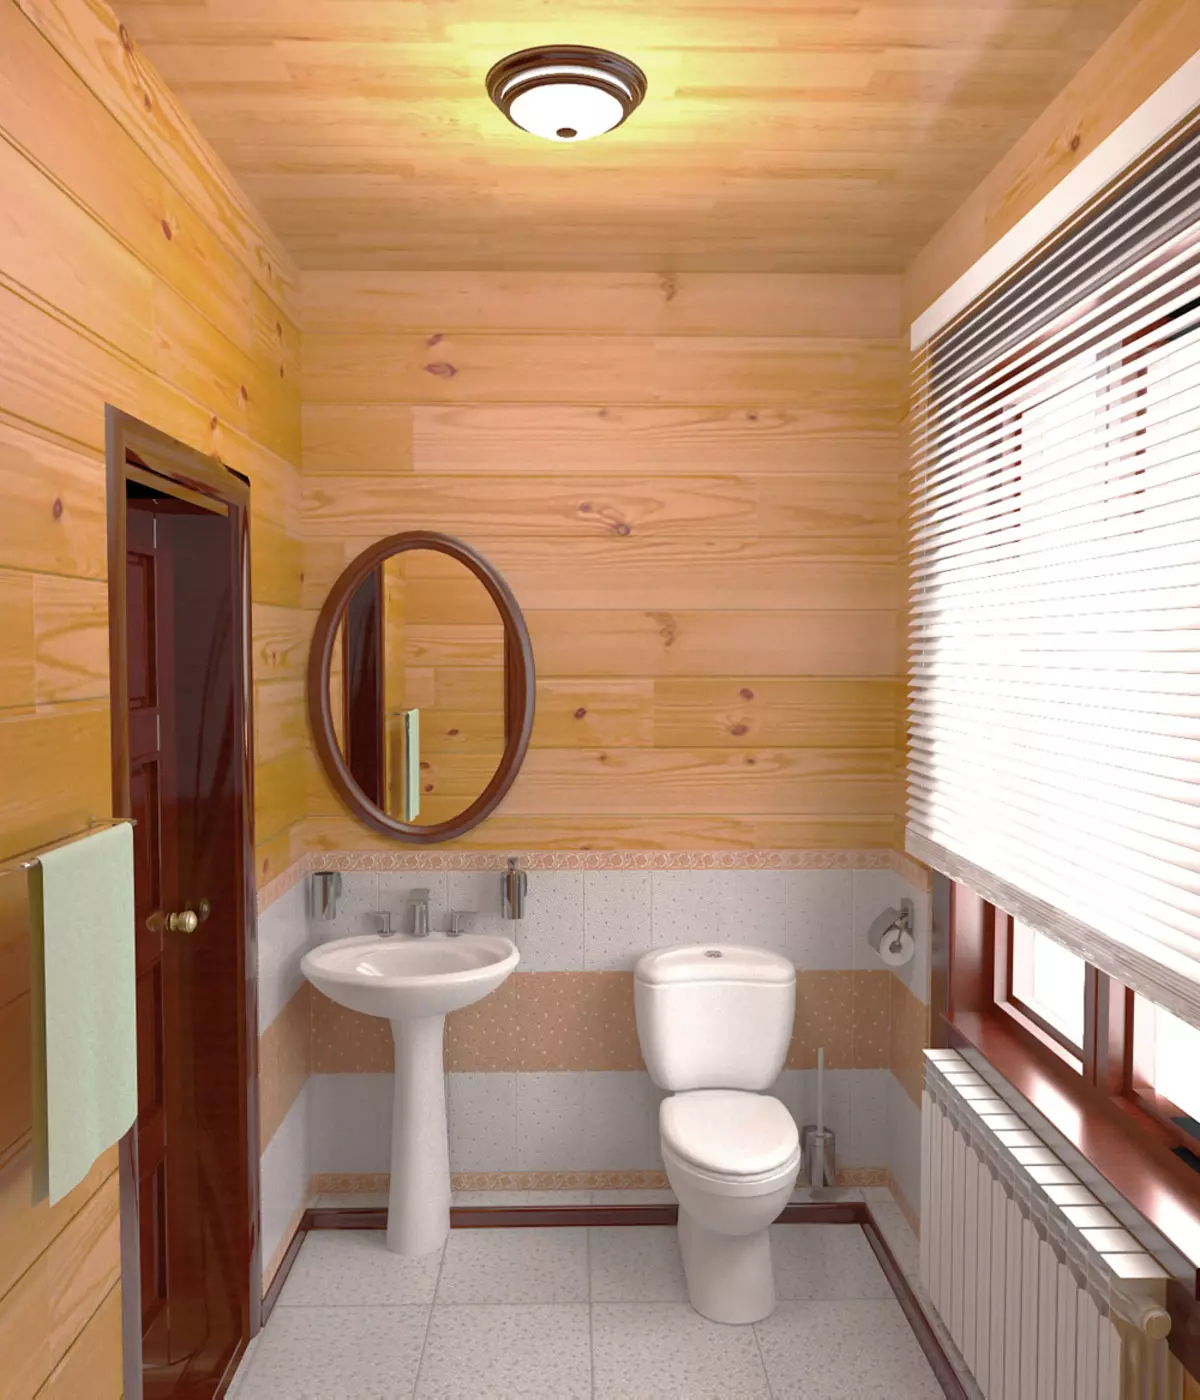 חדר אמבטיה בבית עץ (76 תמונות): עיצוב חדר בבית של בר בארץ, דוגמאות של גימור הרצפה, תוכניות אוורור 10475_66